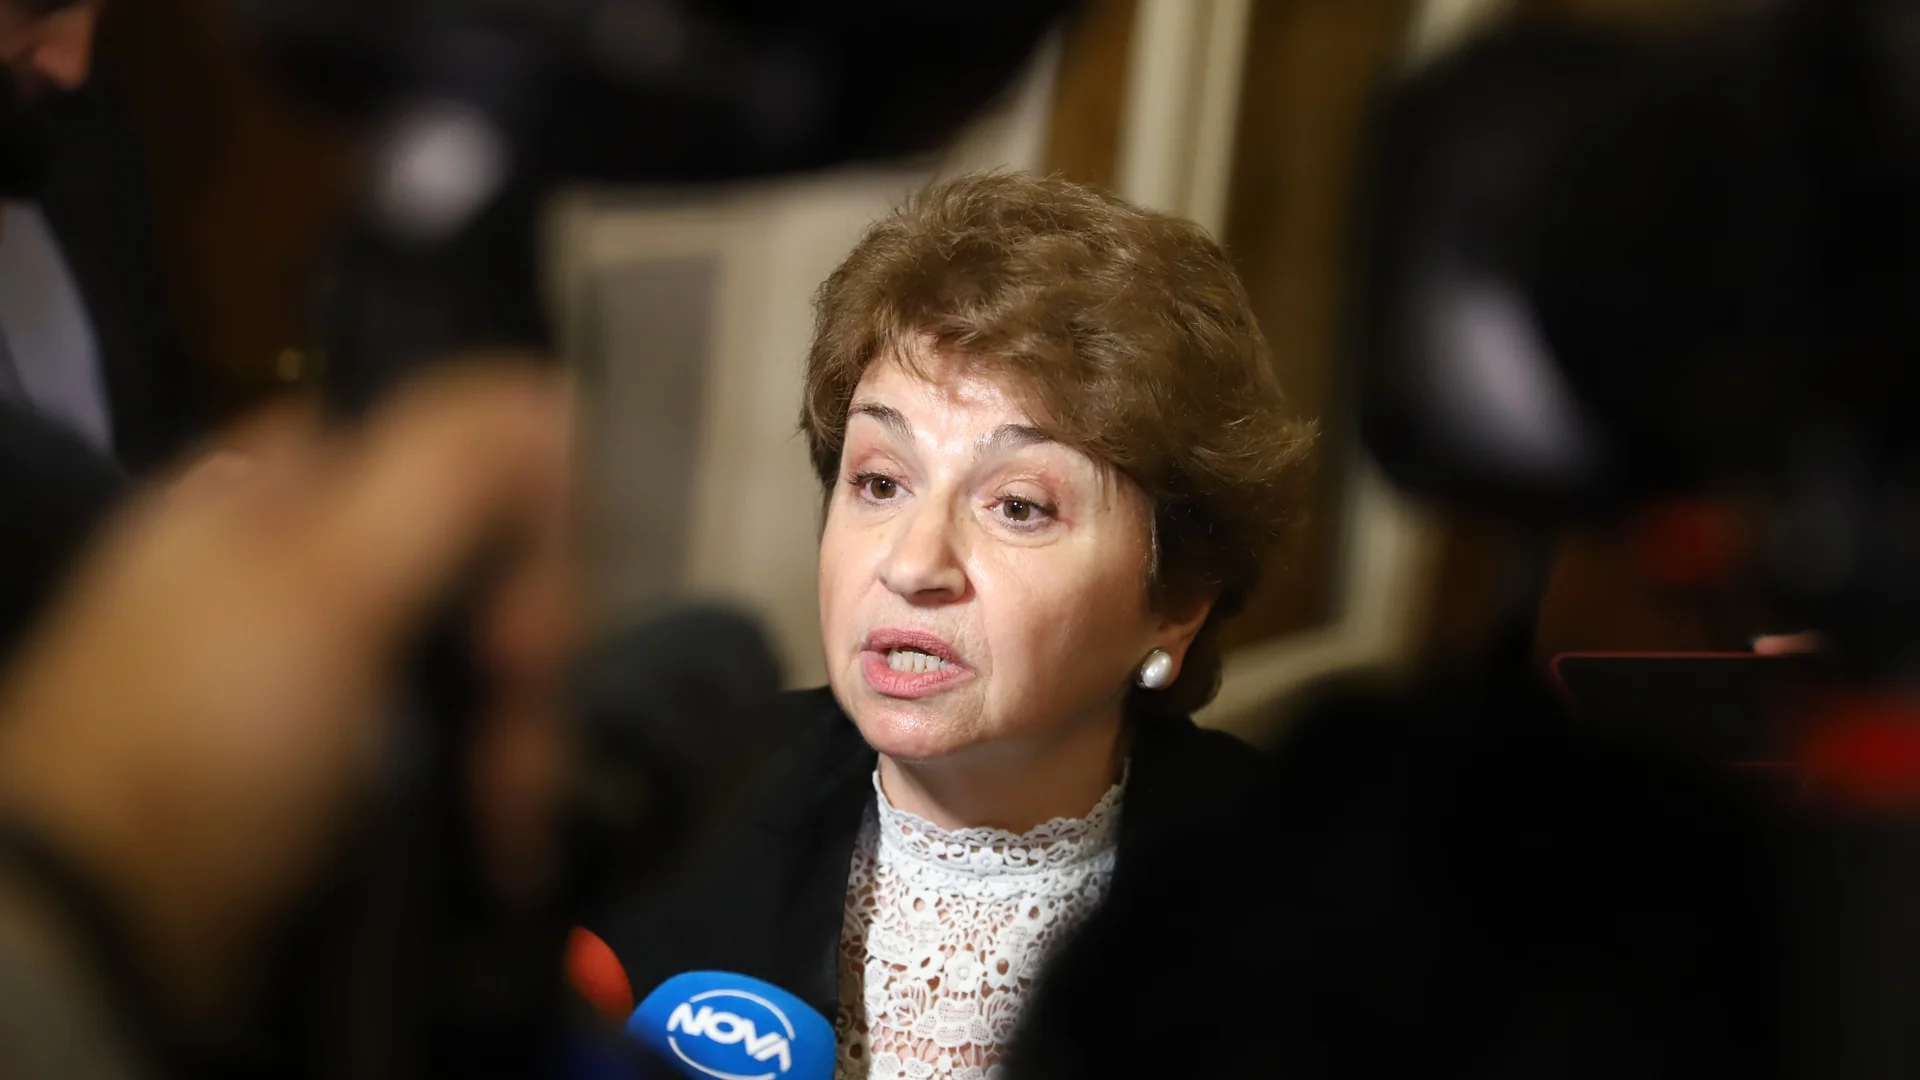 Меглена Плугчиева е подала оставка като съветник на Димитър Главчев